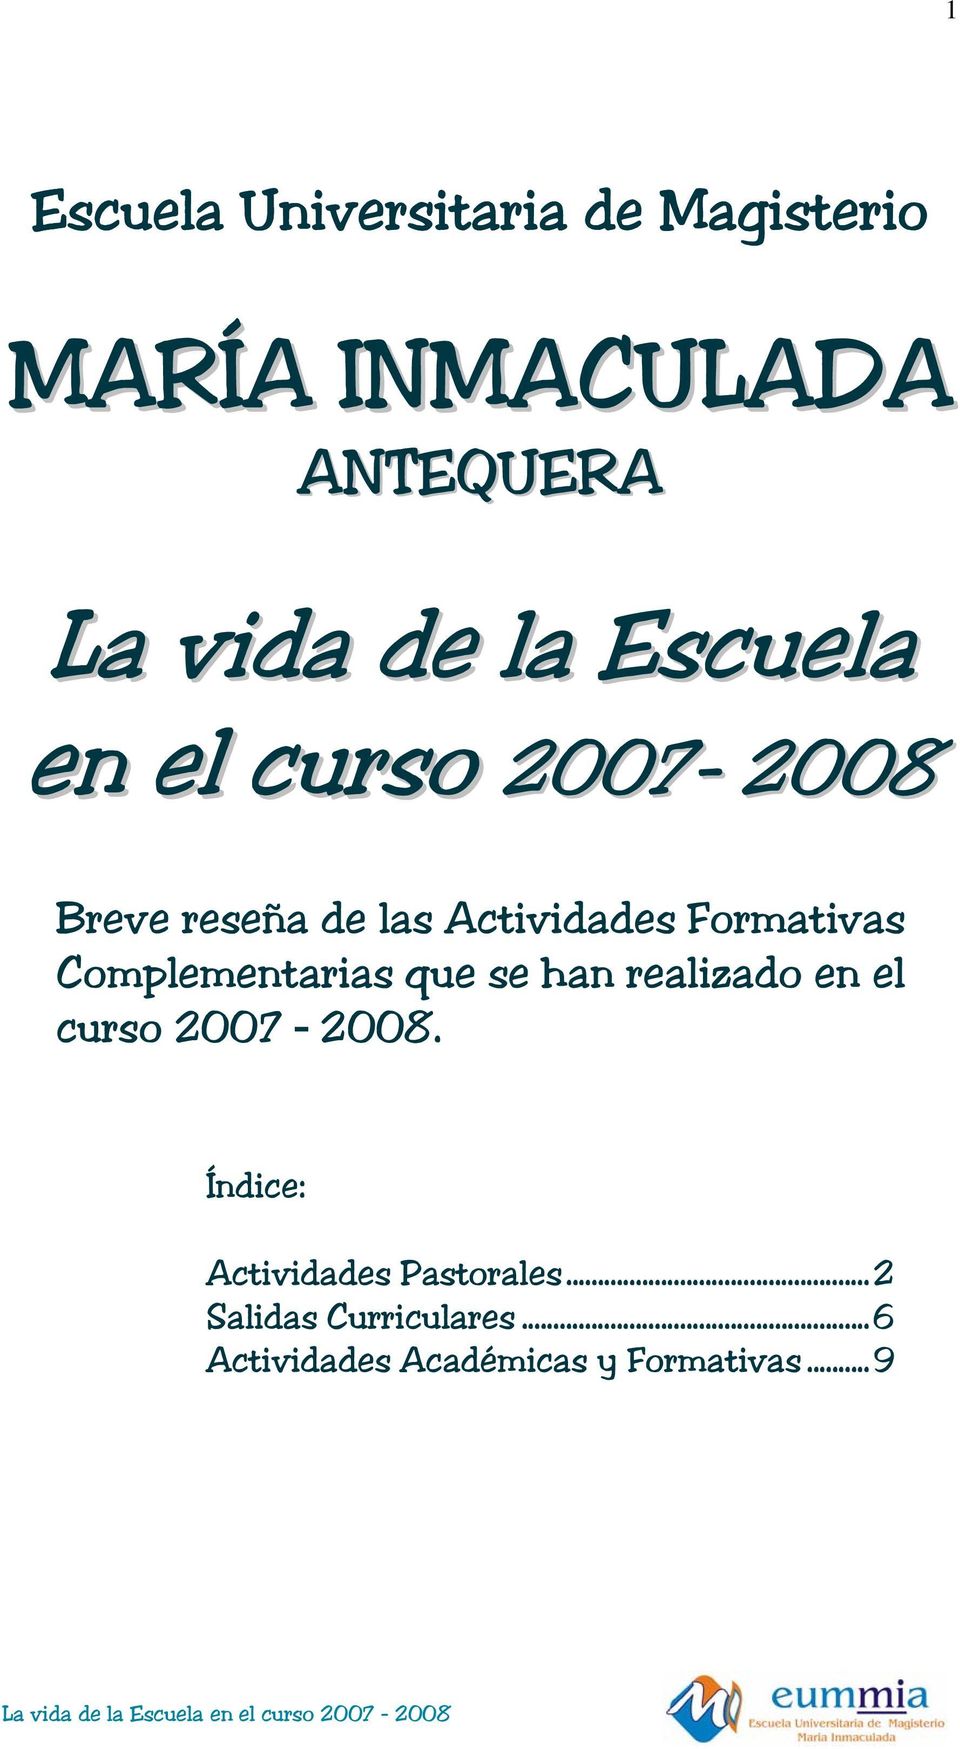 Complementarias que se han realizado en el curso 2007 2008.